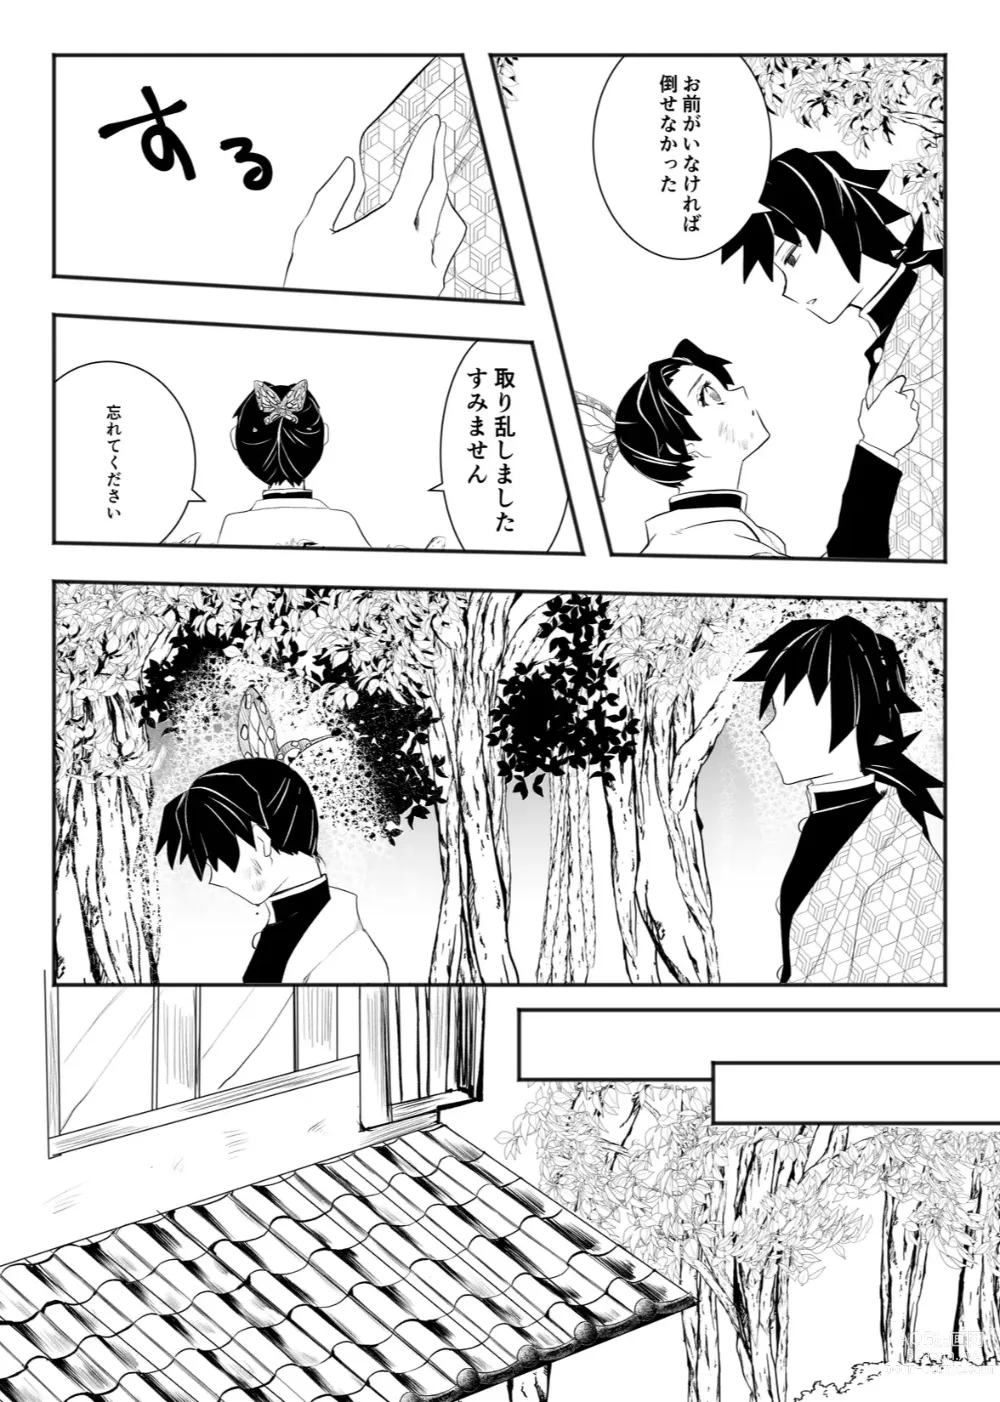 Page 6 of doujinshi Hodokete Tokeru